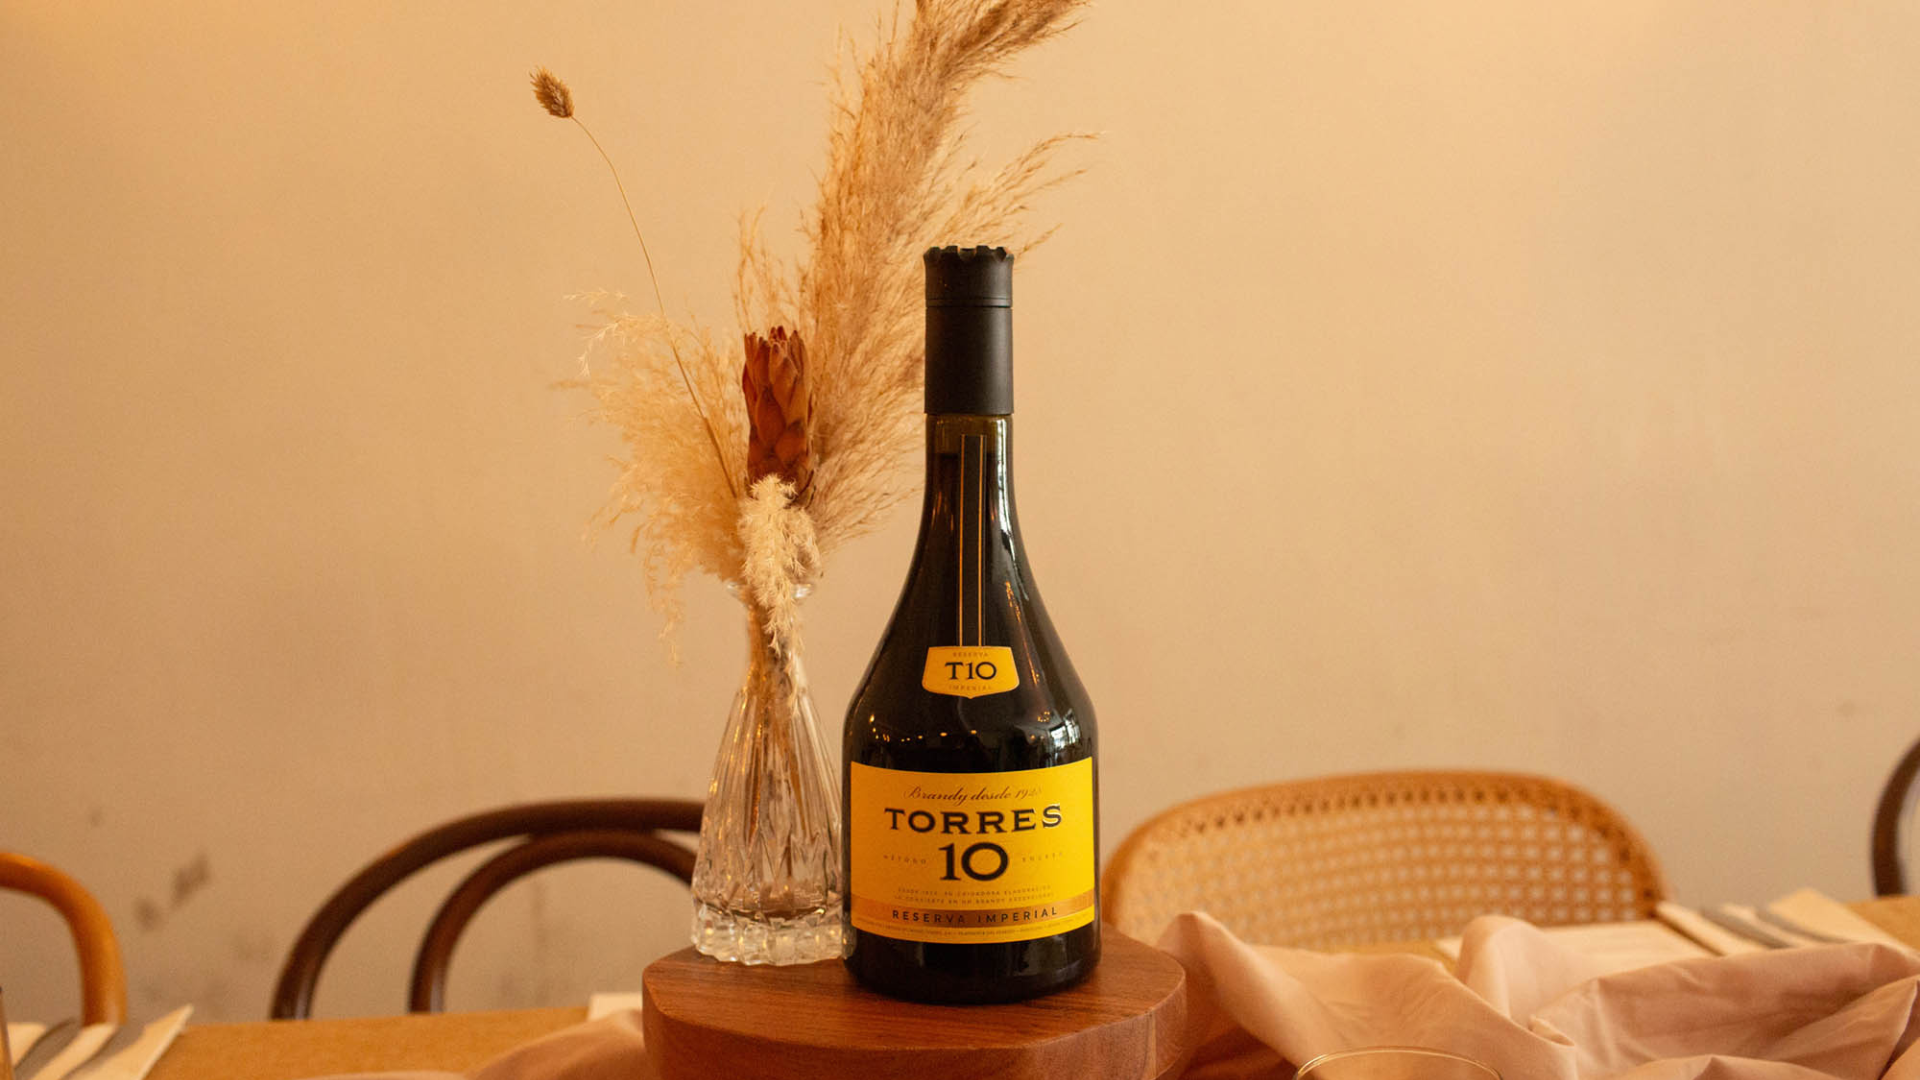 Torres Brandy 10